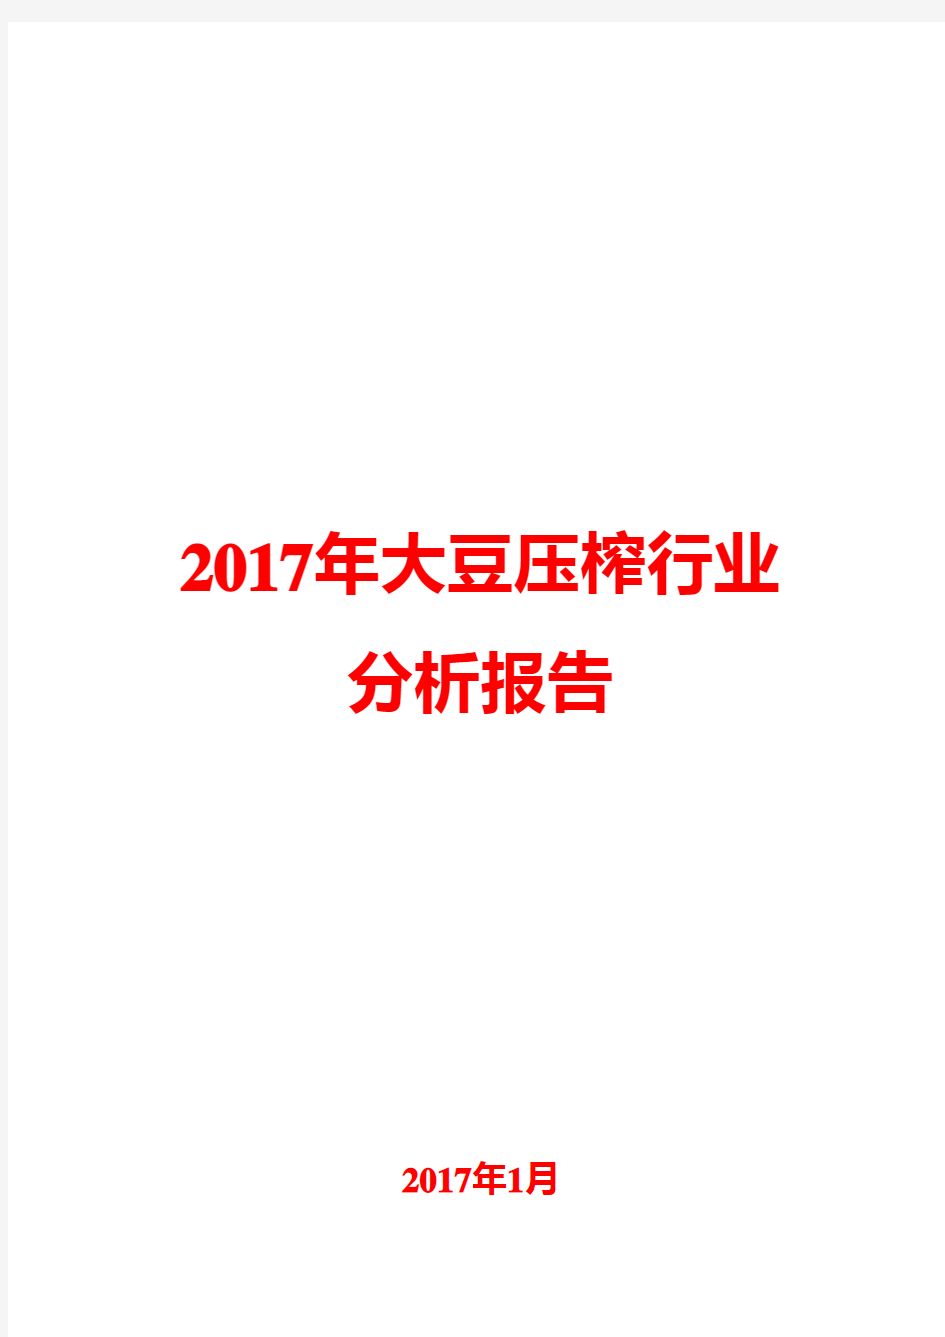 2017年大豆压榨行业分析报告